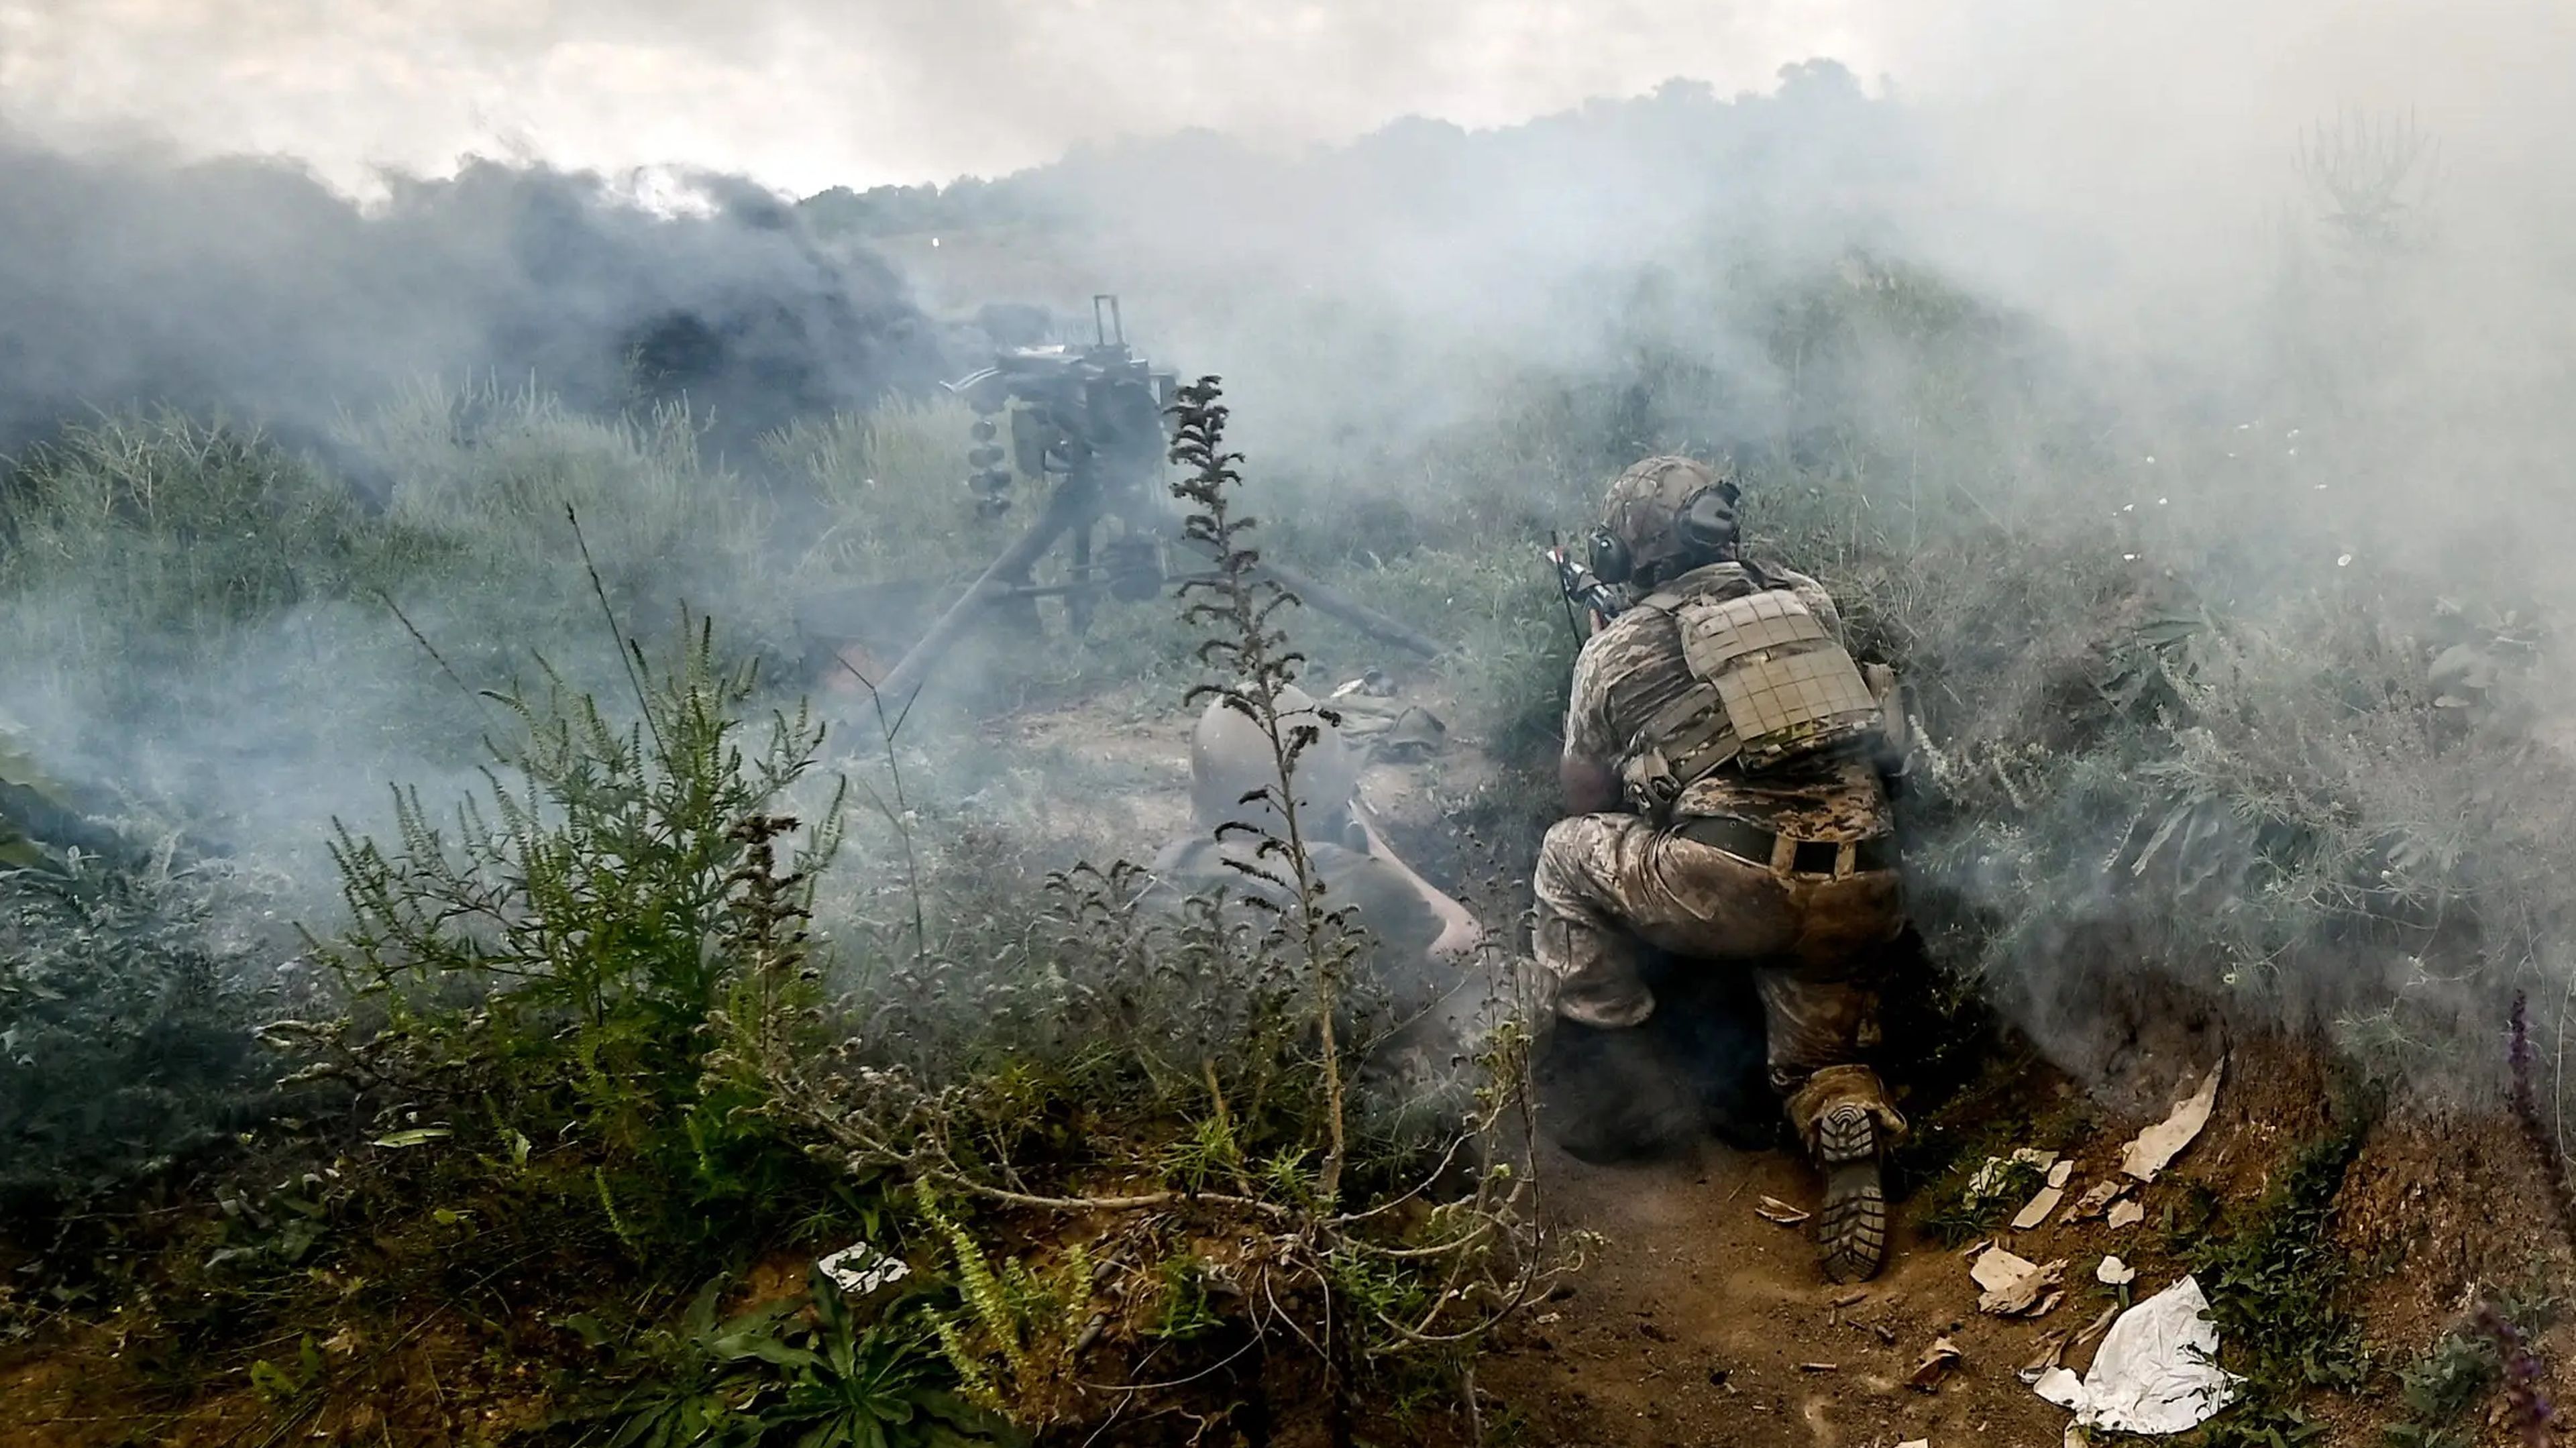 El humo cubre a los militares que practican el asalto a posiciones enemigas durante un simulacro táctico en la dirección de la provincia de Zaporiyia